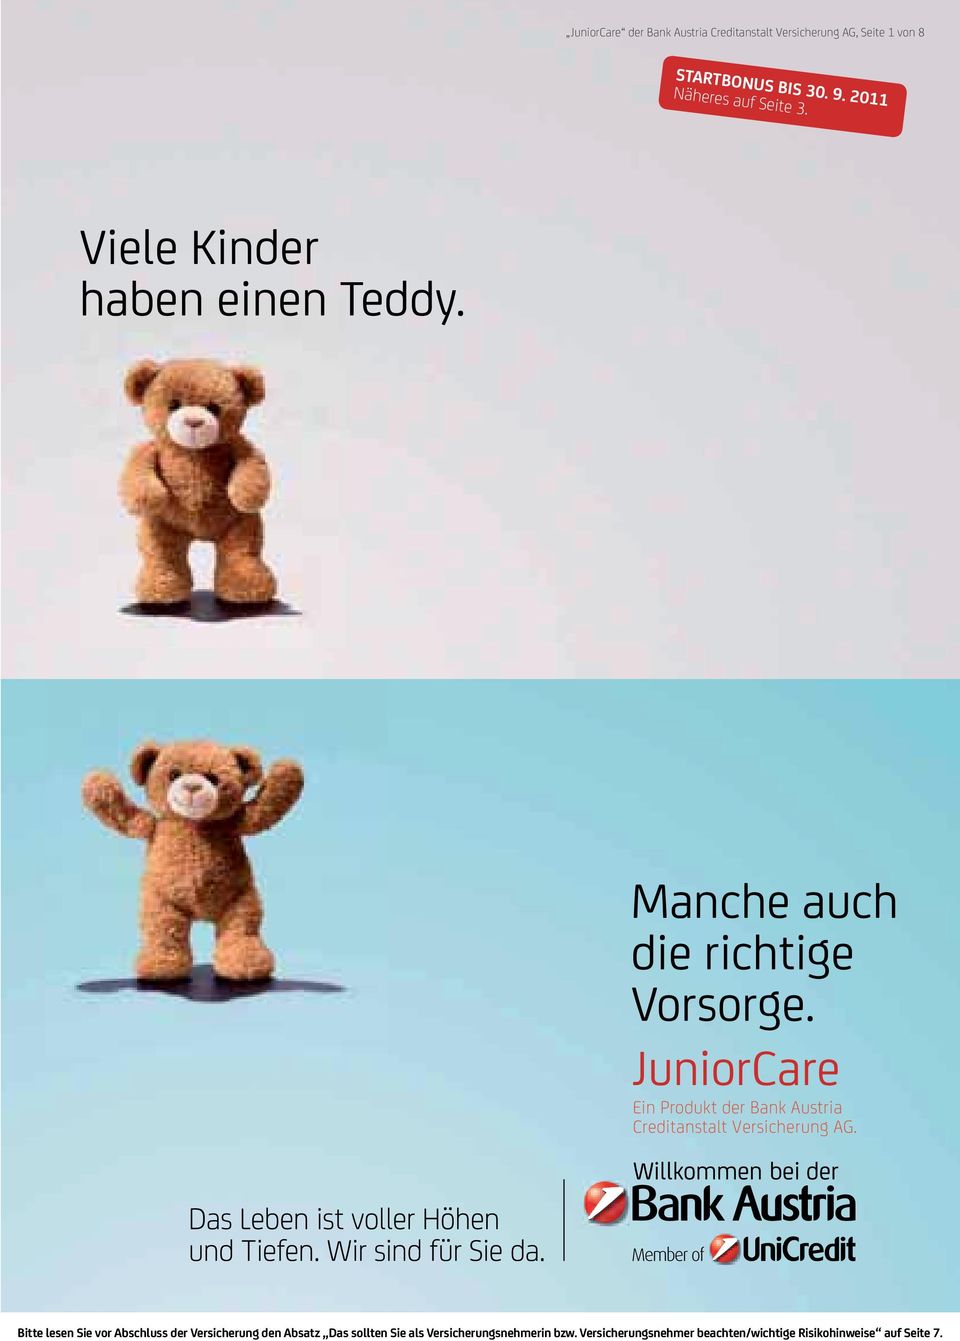 Viele Kinder haben einen Teddy.